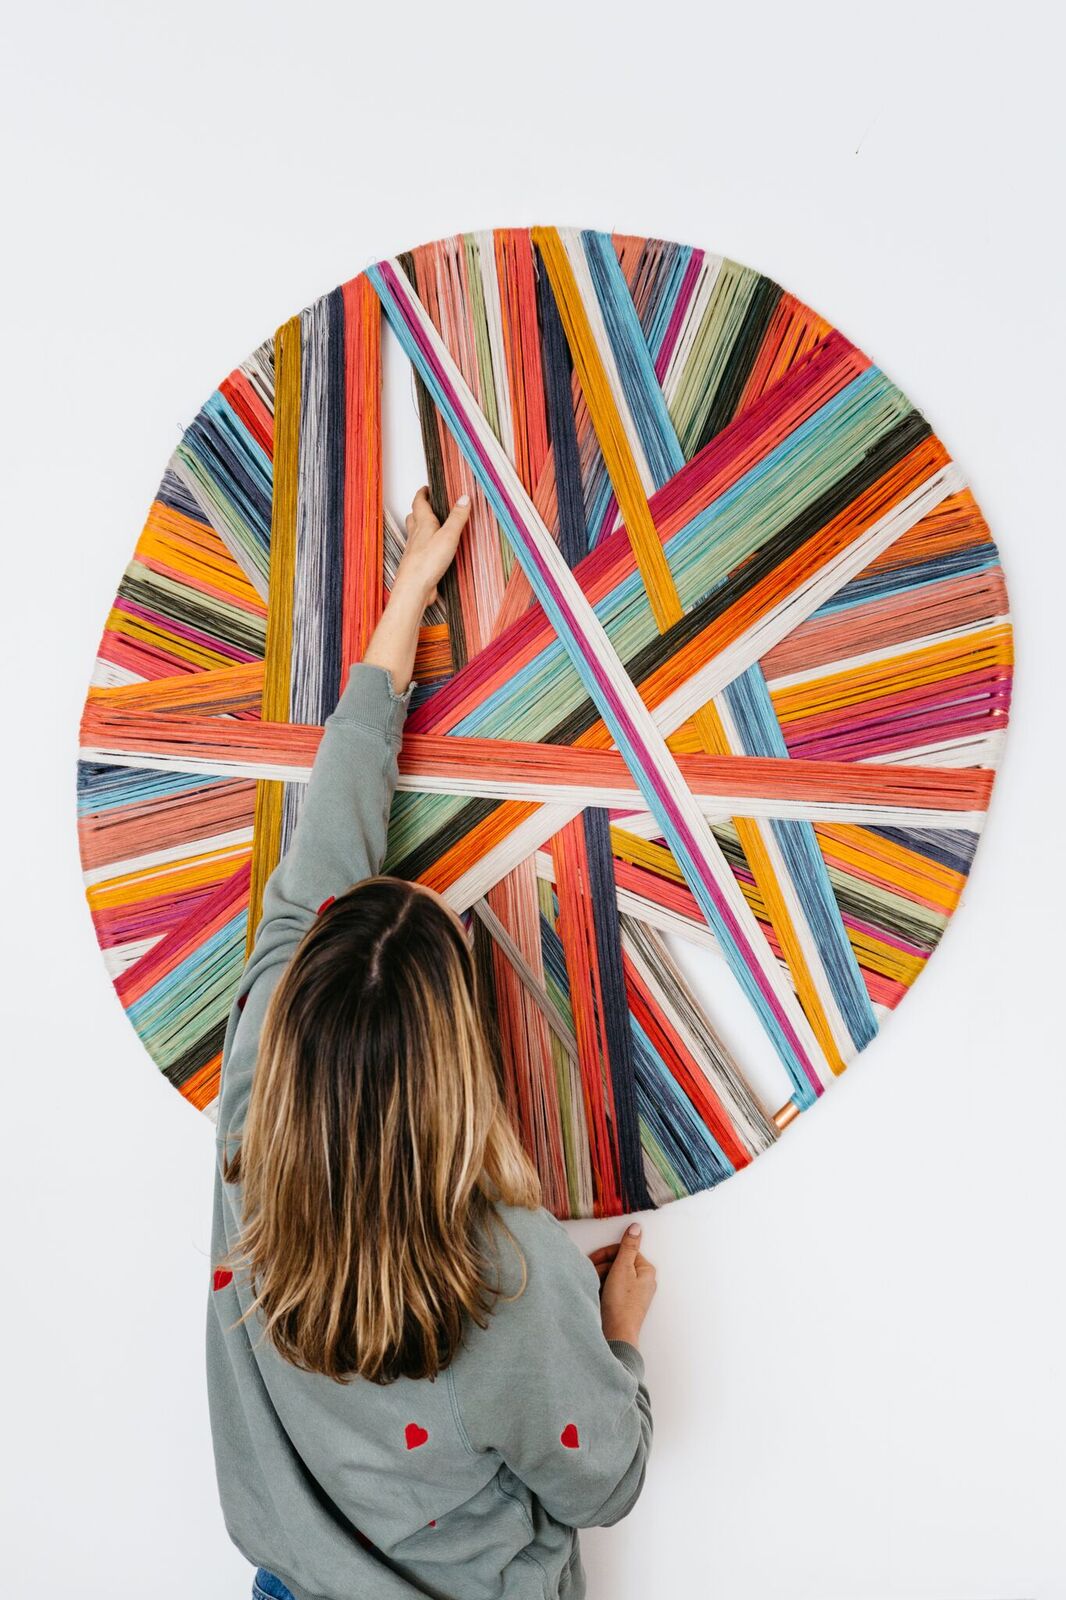 A artista australiana cria peças super coloridas que hipnotizam o olhar